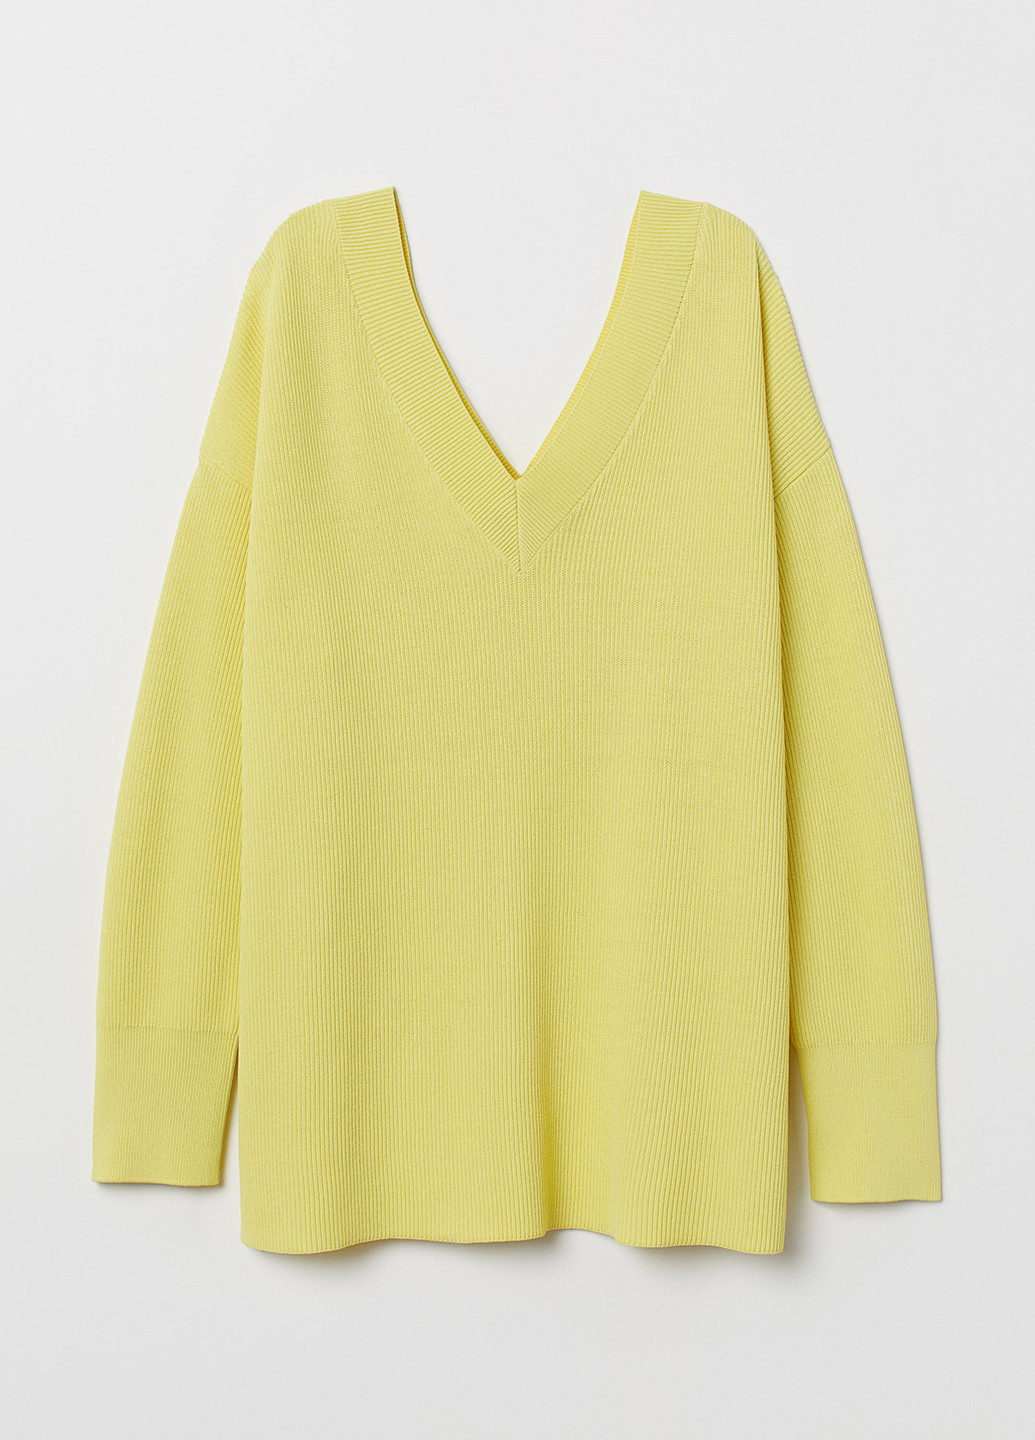 Желтый демисезонный пуловер пуловер H&M